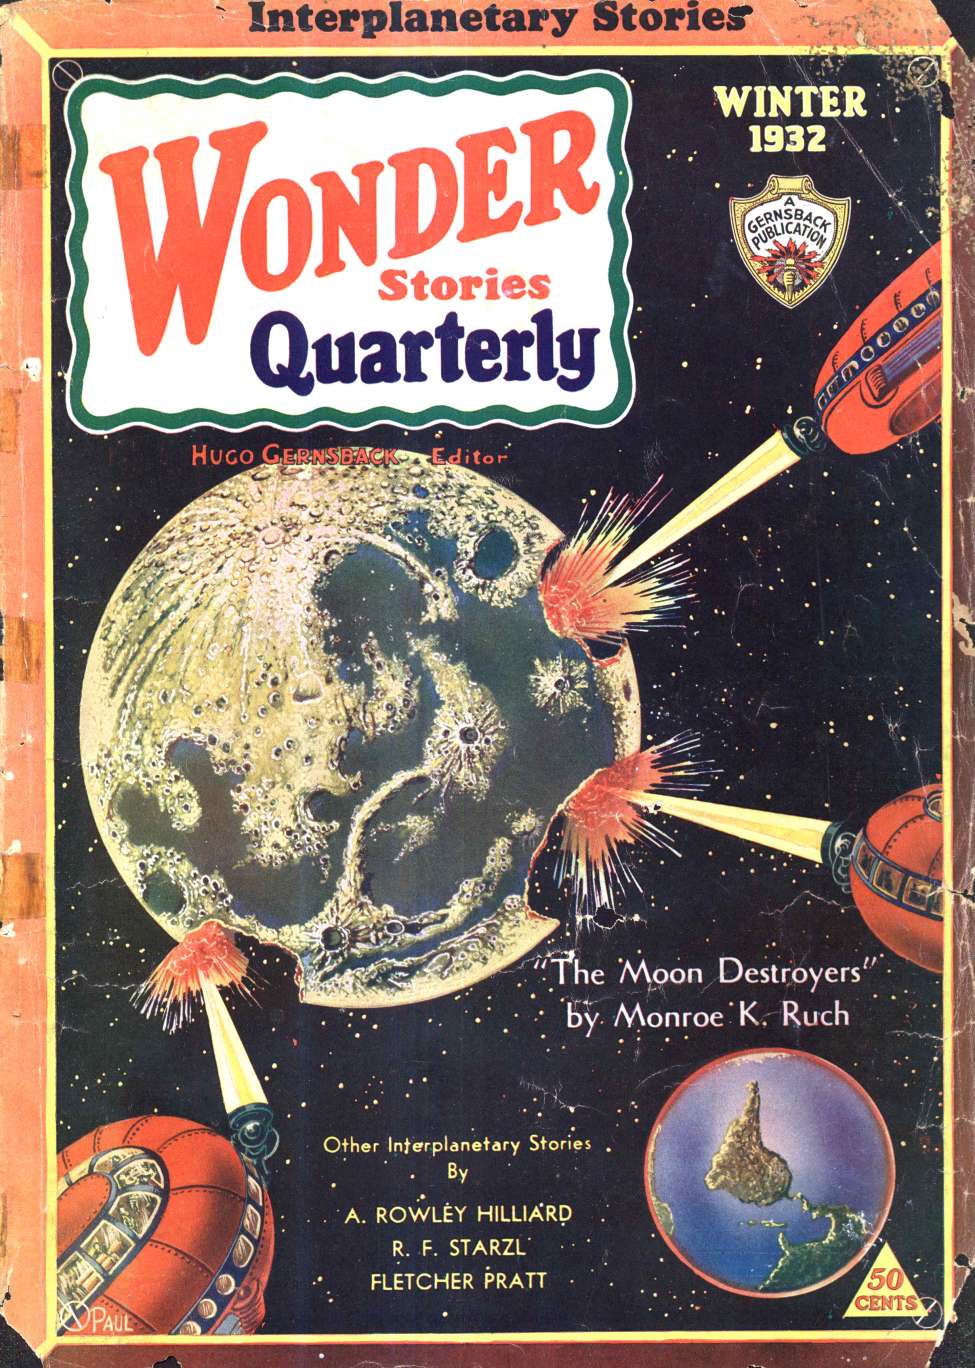 Comic Book Cover For Wonder Stories Quarterly v3 2 - The Onslaught from Rigel - Fletcher Pratt